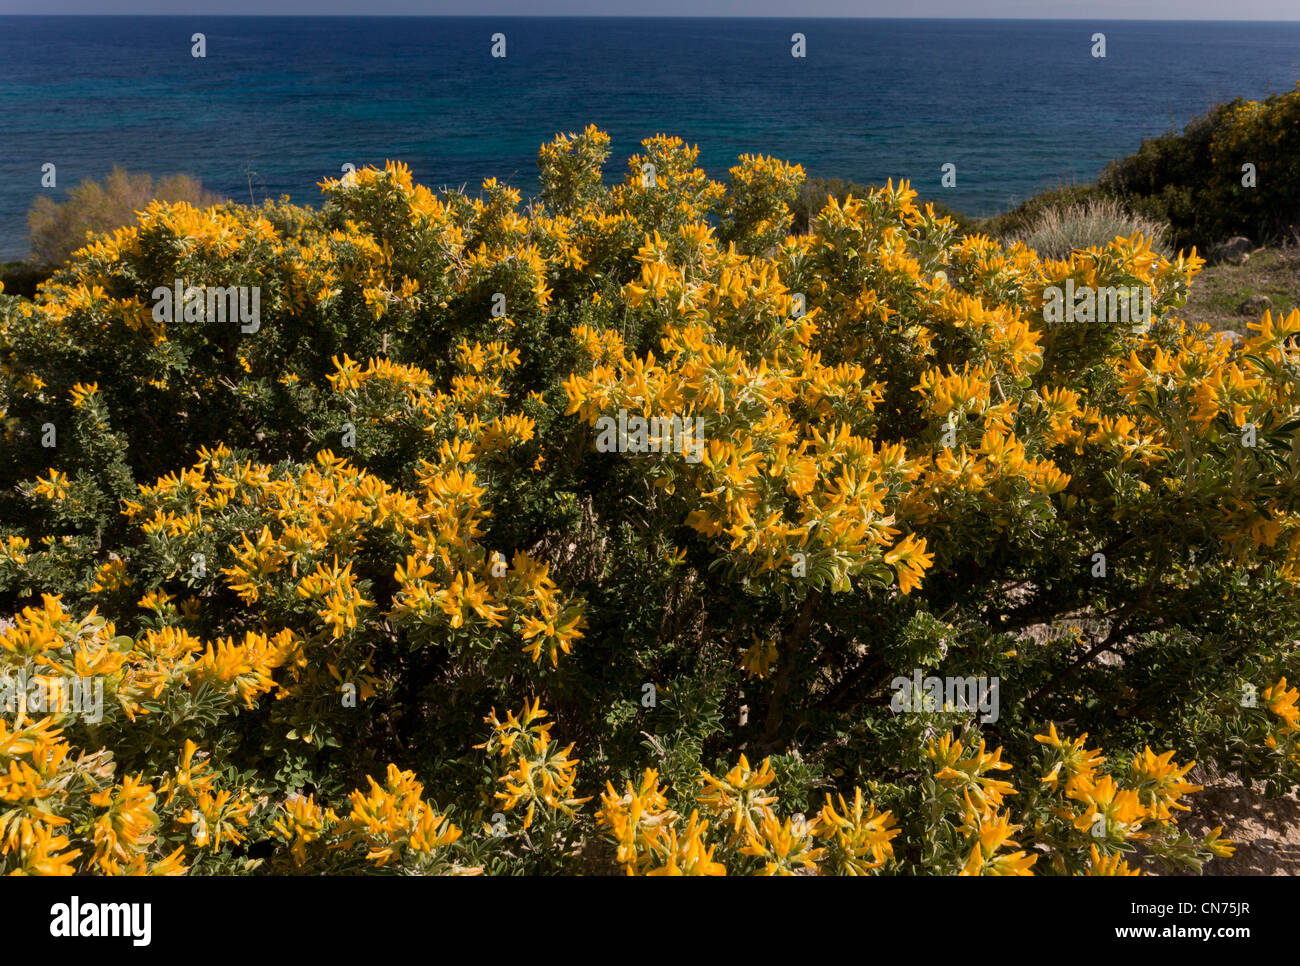 Tree Medick o arbustive, Medick Medicago arborea sulla costa di Chios, Grecia. Foto Stock